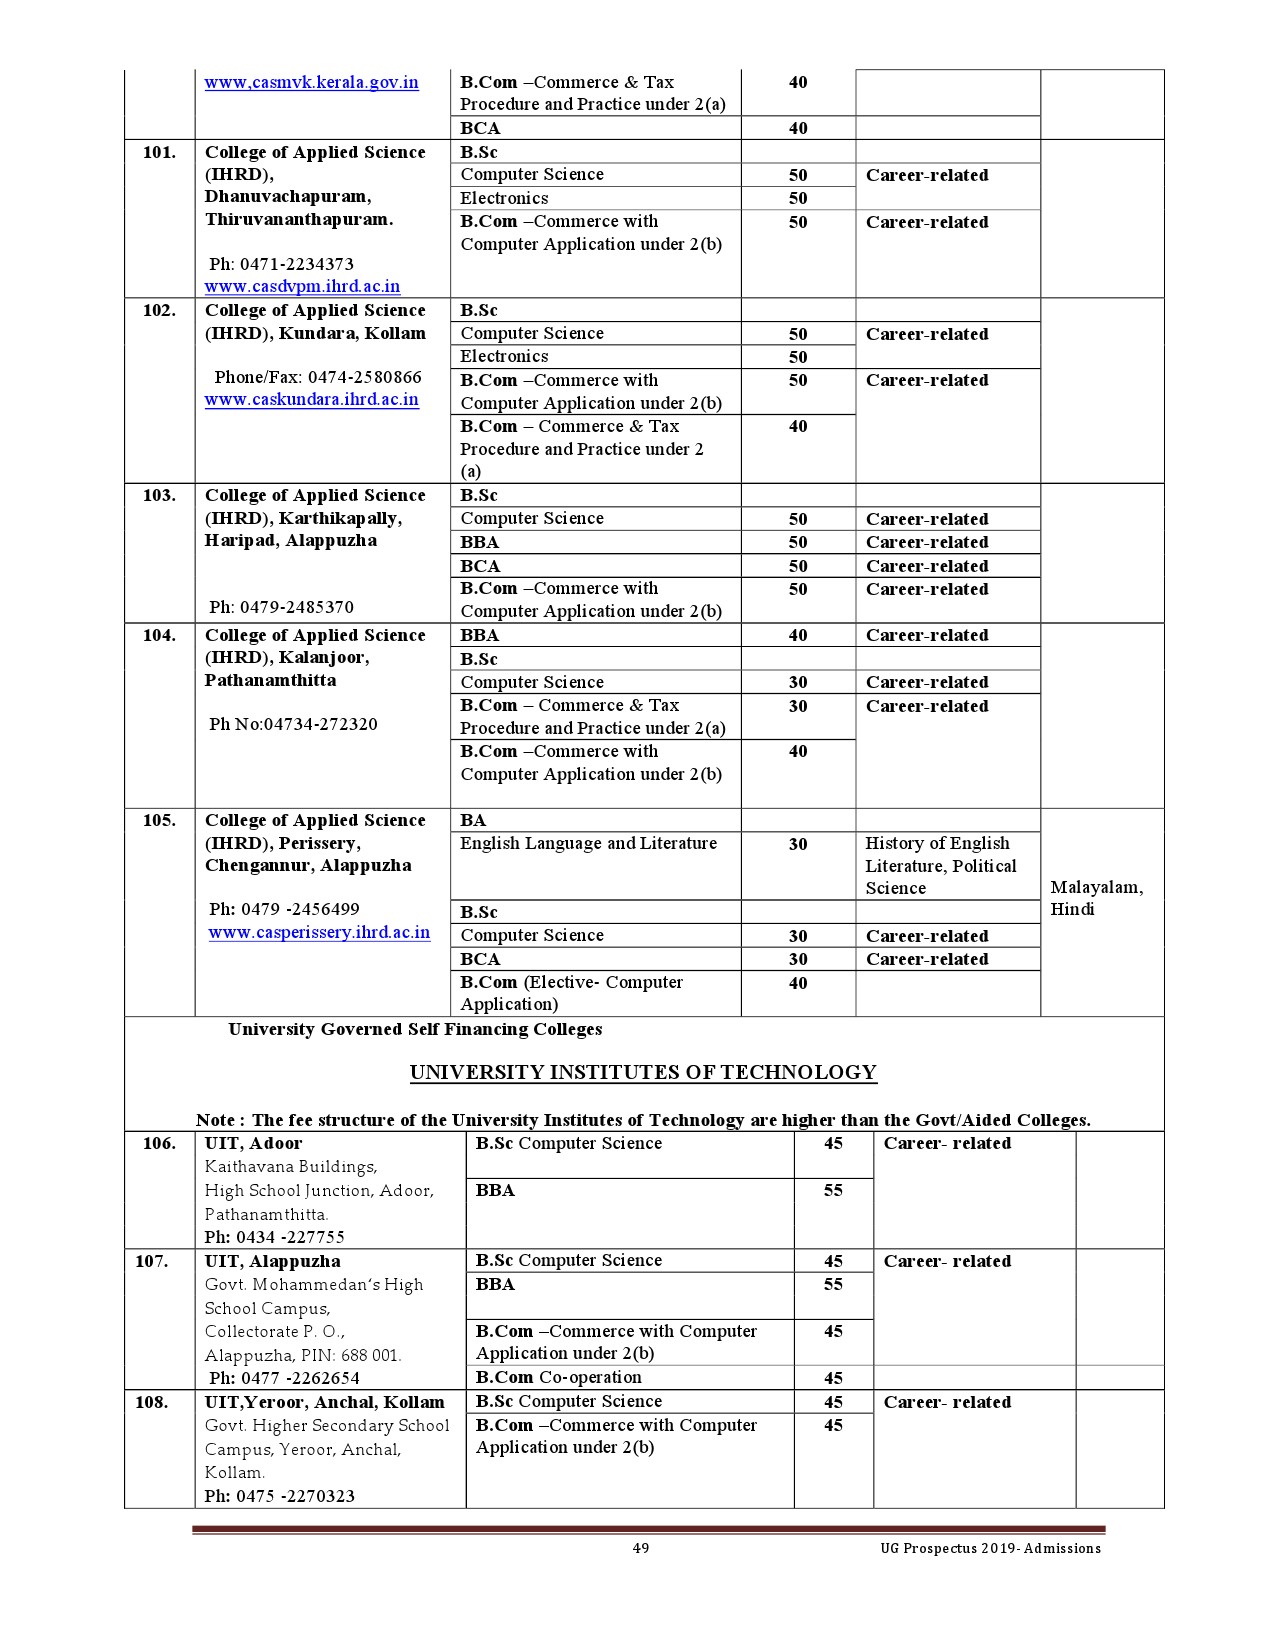 Kerala University UG Admission Prospectus 2019 - Notification Image 49